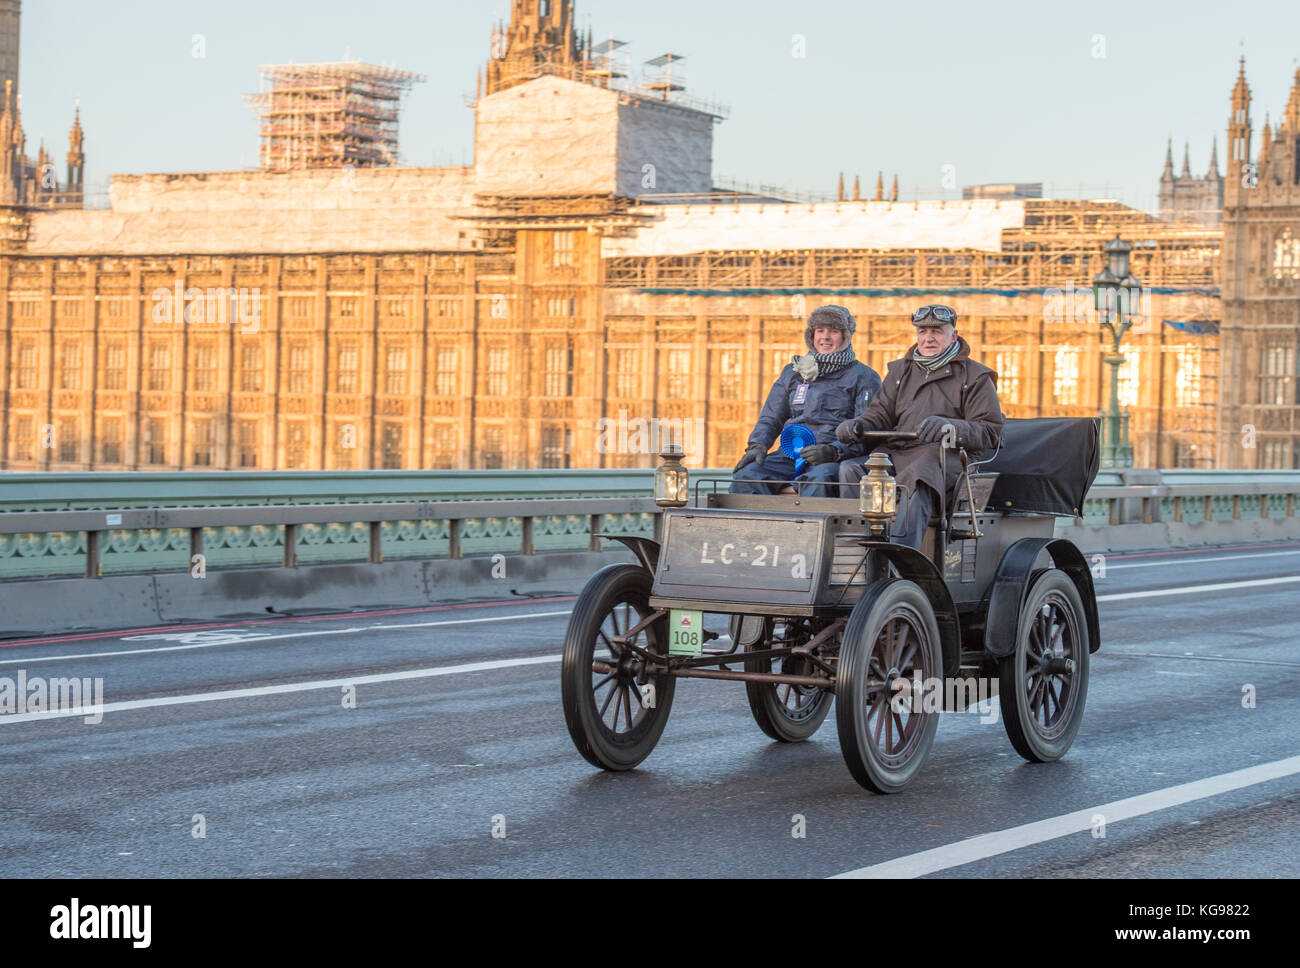 5 novembre 2017. Bonhams de Londres à Brighton, la course automobile de vétéran, la plus longue course automobile au monde, 1902 Columbia Electric, Westminster Bridge. Banque D'Images